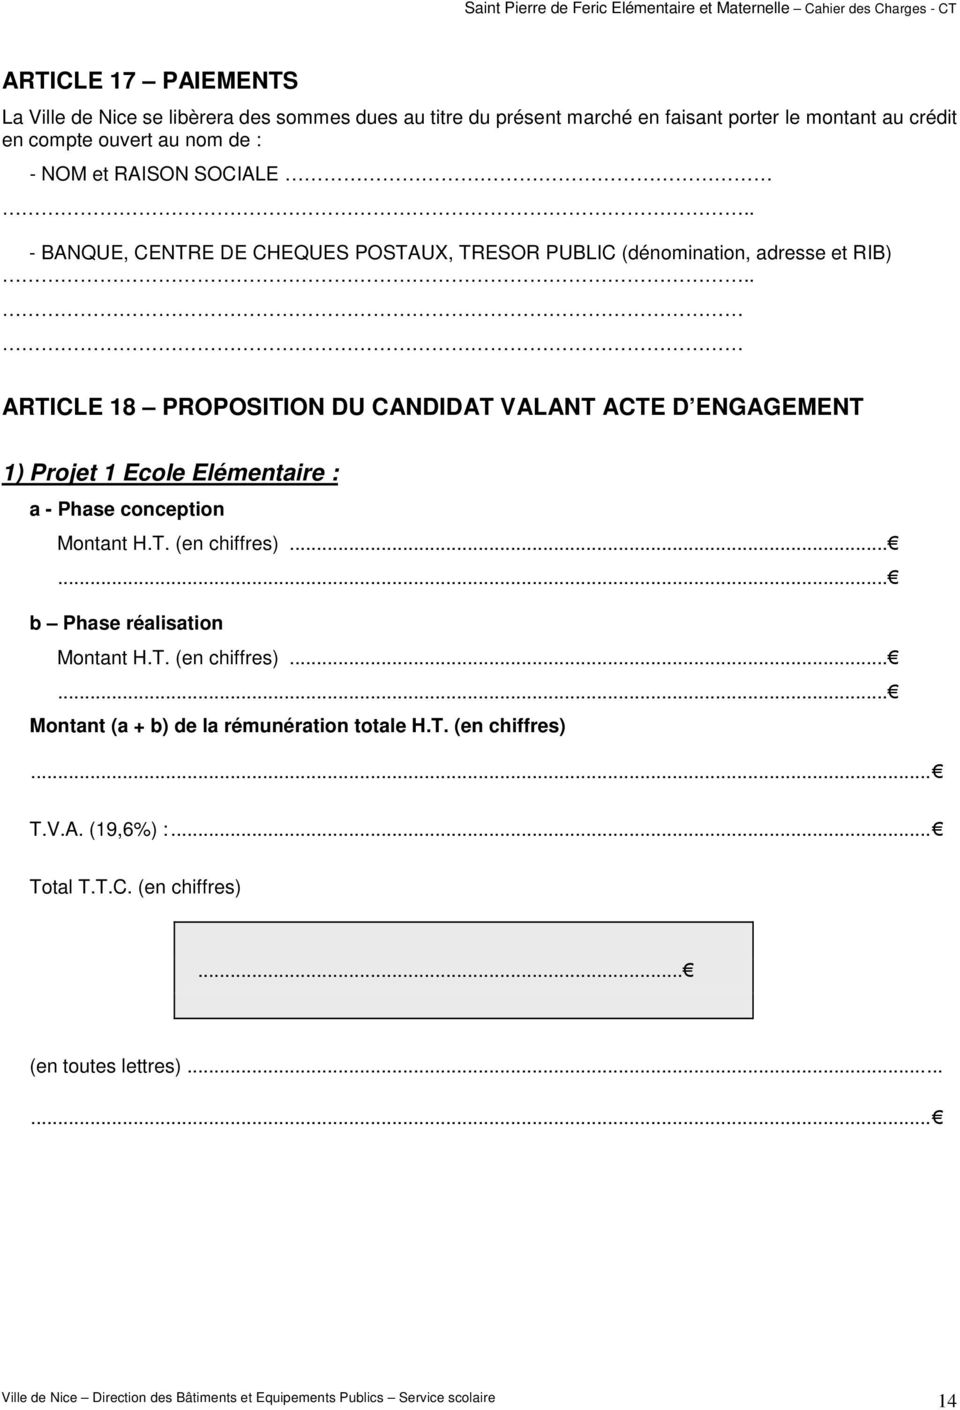 . ARTICLE 18 PROPOSITION DU CANDIDAT VALANT ACTE D ENGAGEMENT 1) Projet 1 Ecole Elémentaire : a - Phase conception Montant H.T. (en chiffres)...... b Phase réalisation Montant H.